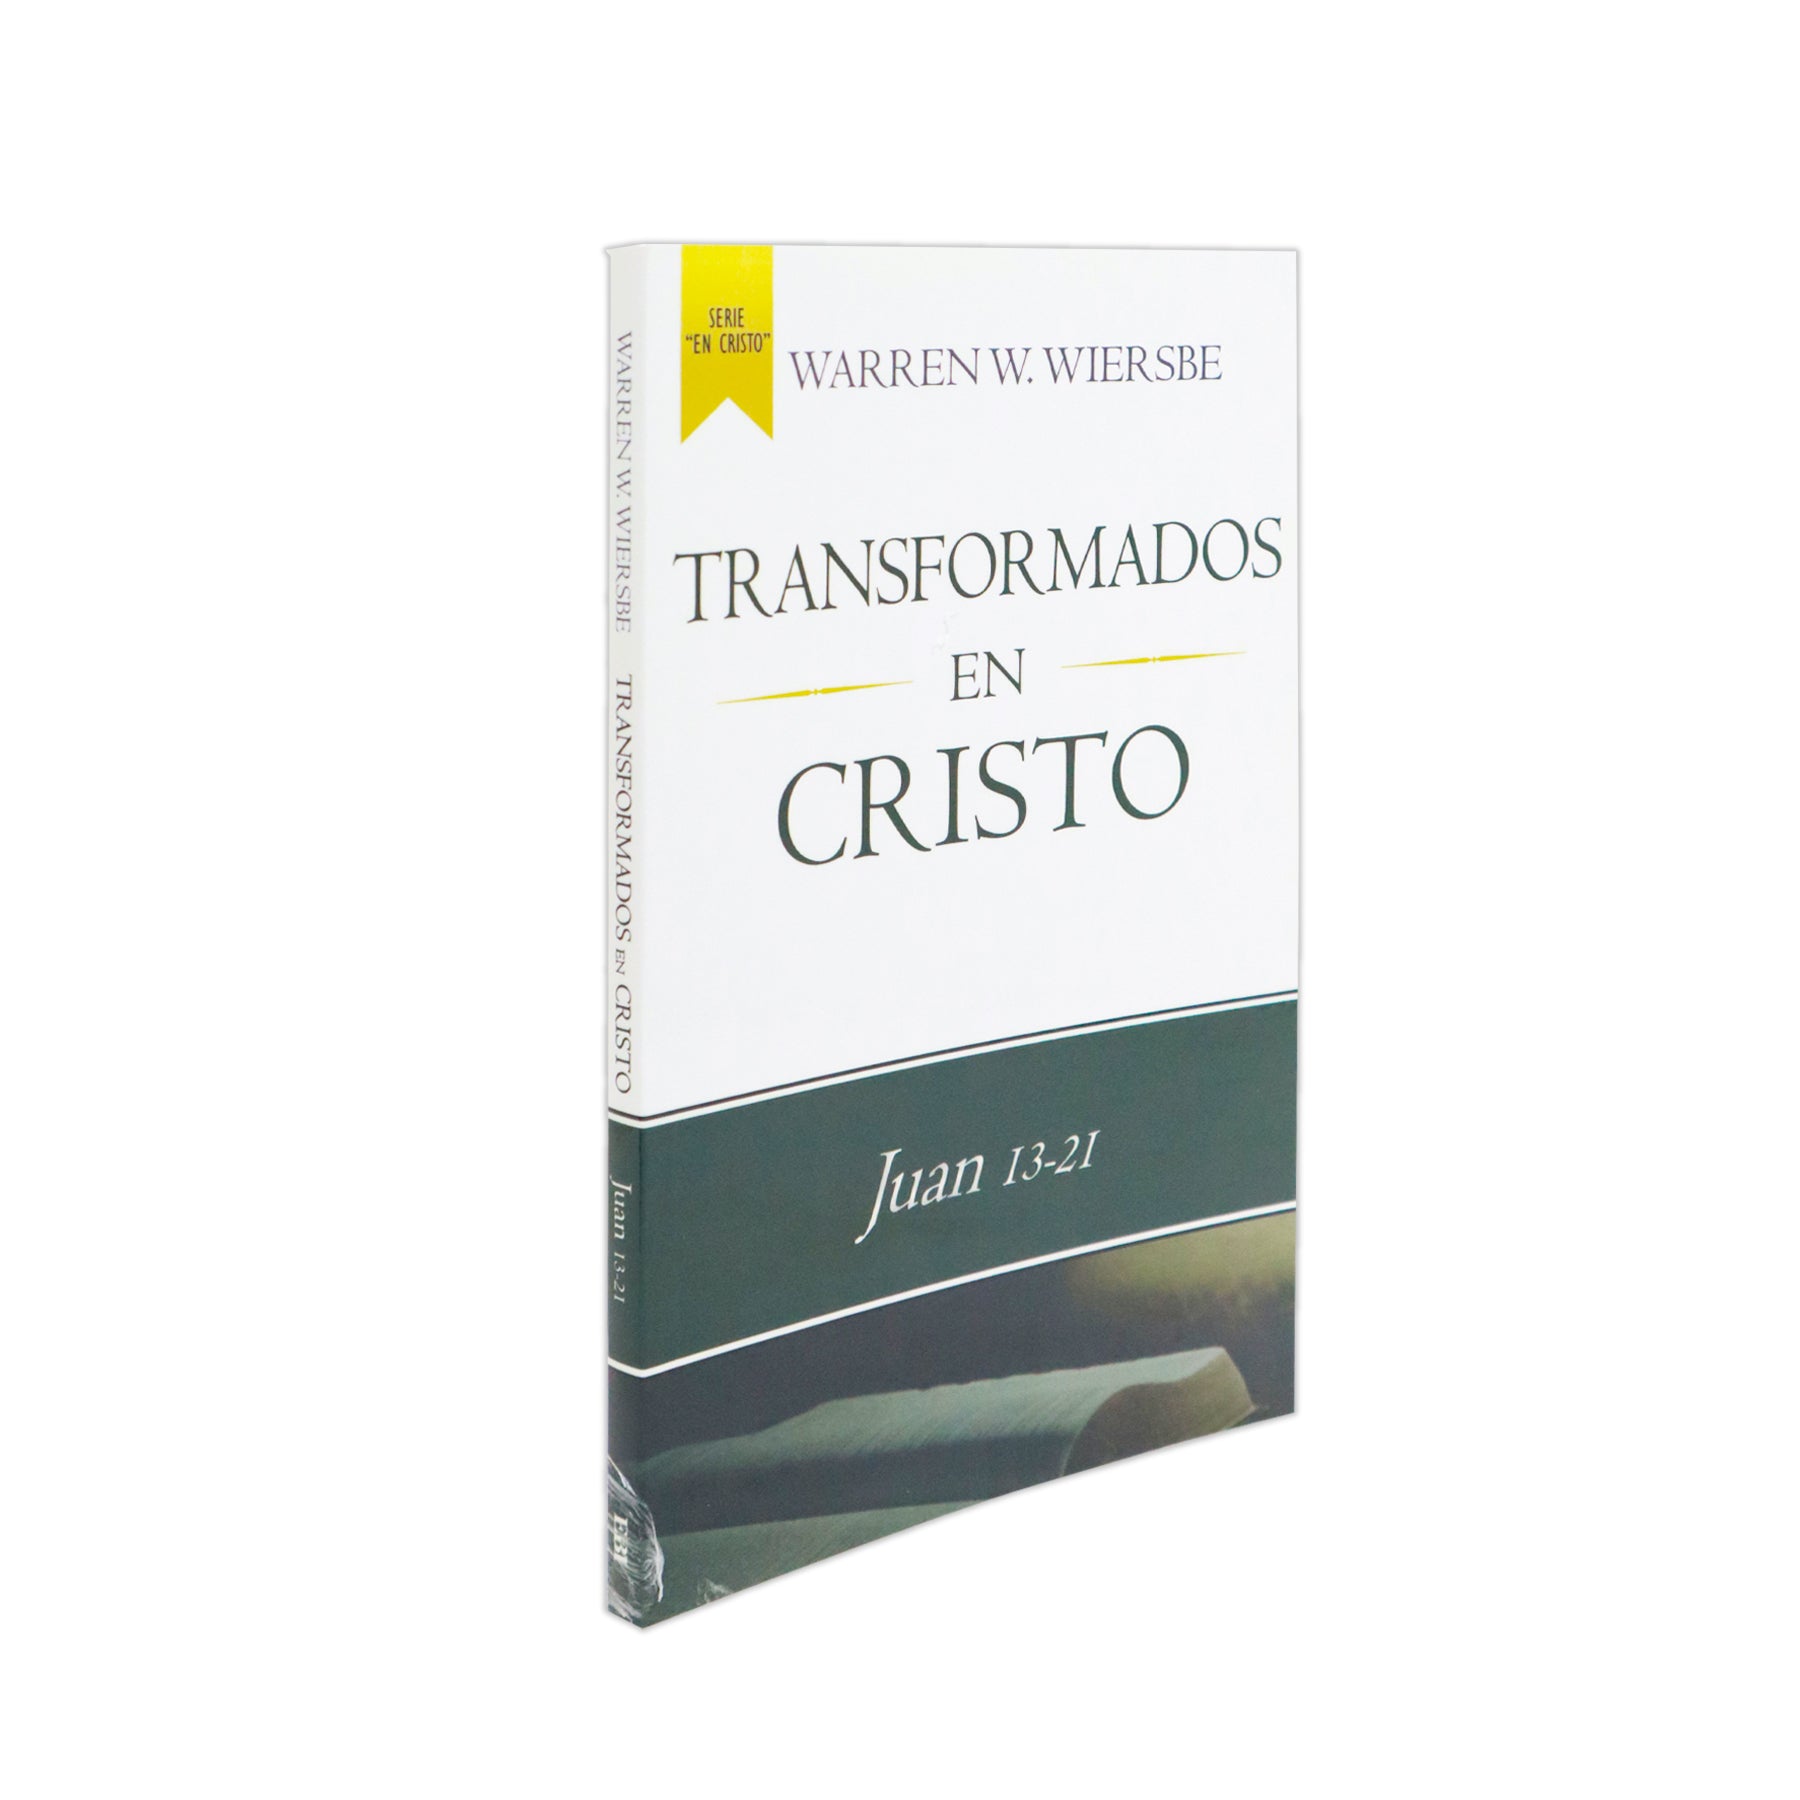 TRANSFORMADOS EN CRISTO